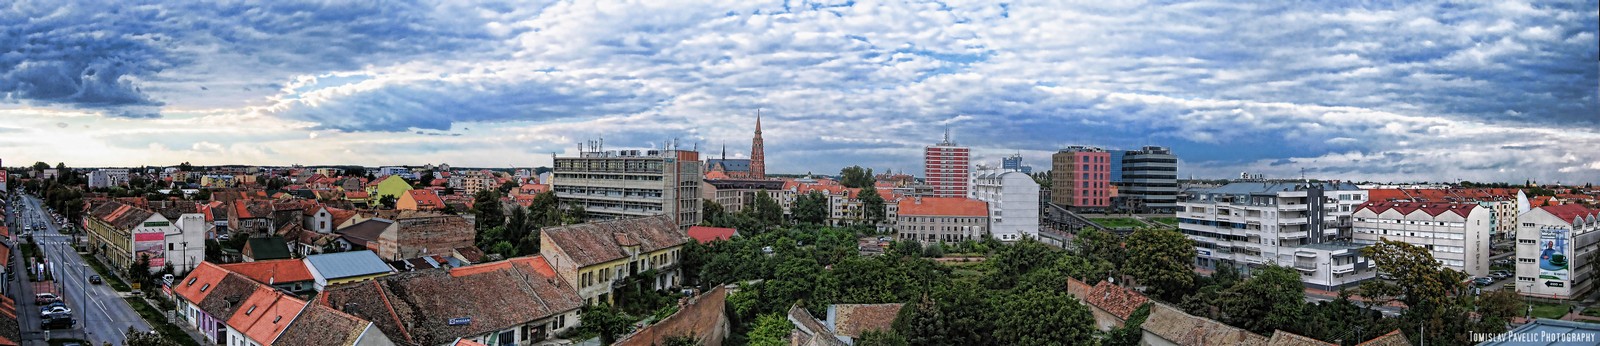 Krovovi grada

Foto: Tomislav Paveli

Kljune rijei: osijek panorama krovovi